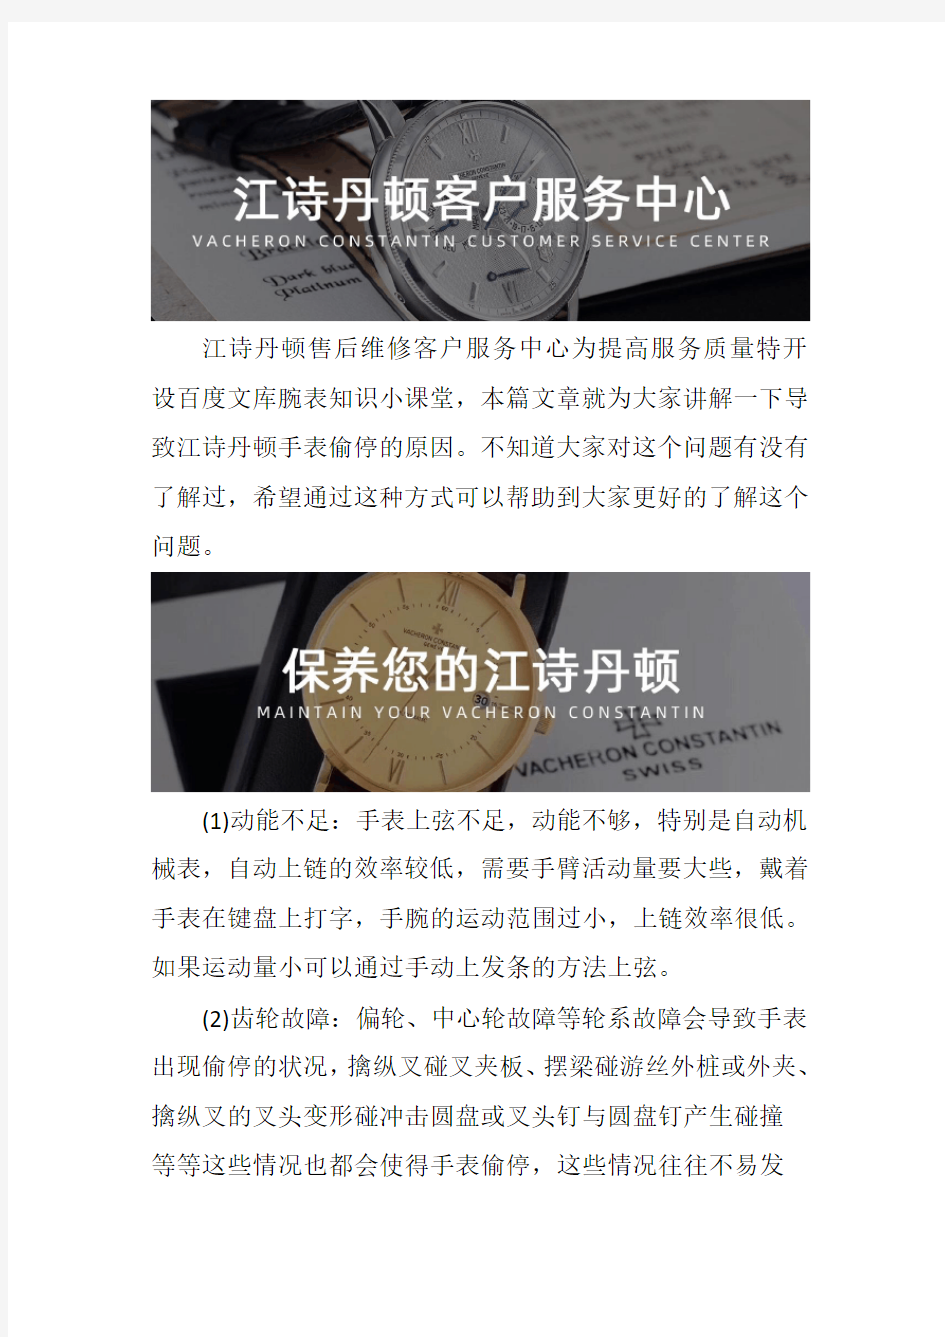 上海江诗丹顿表维修点--导致手表偷停的原因